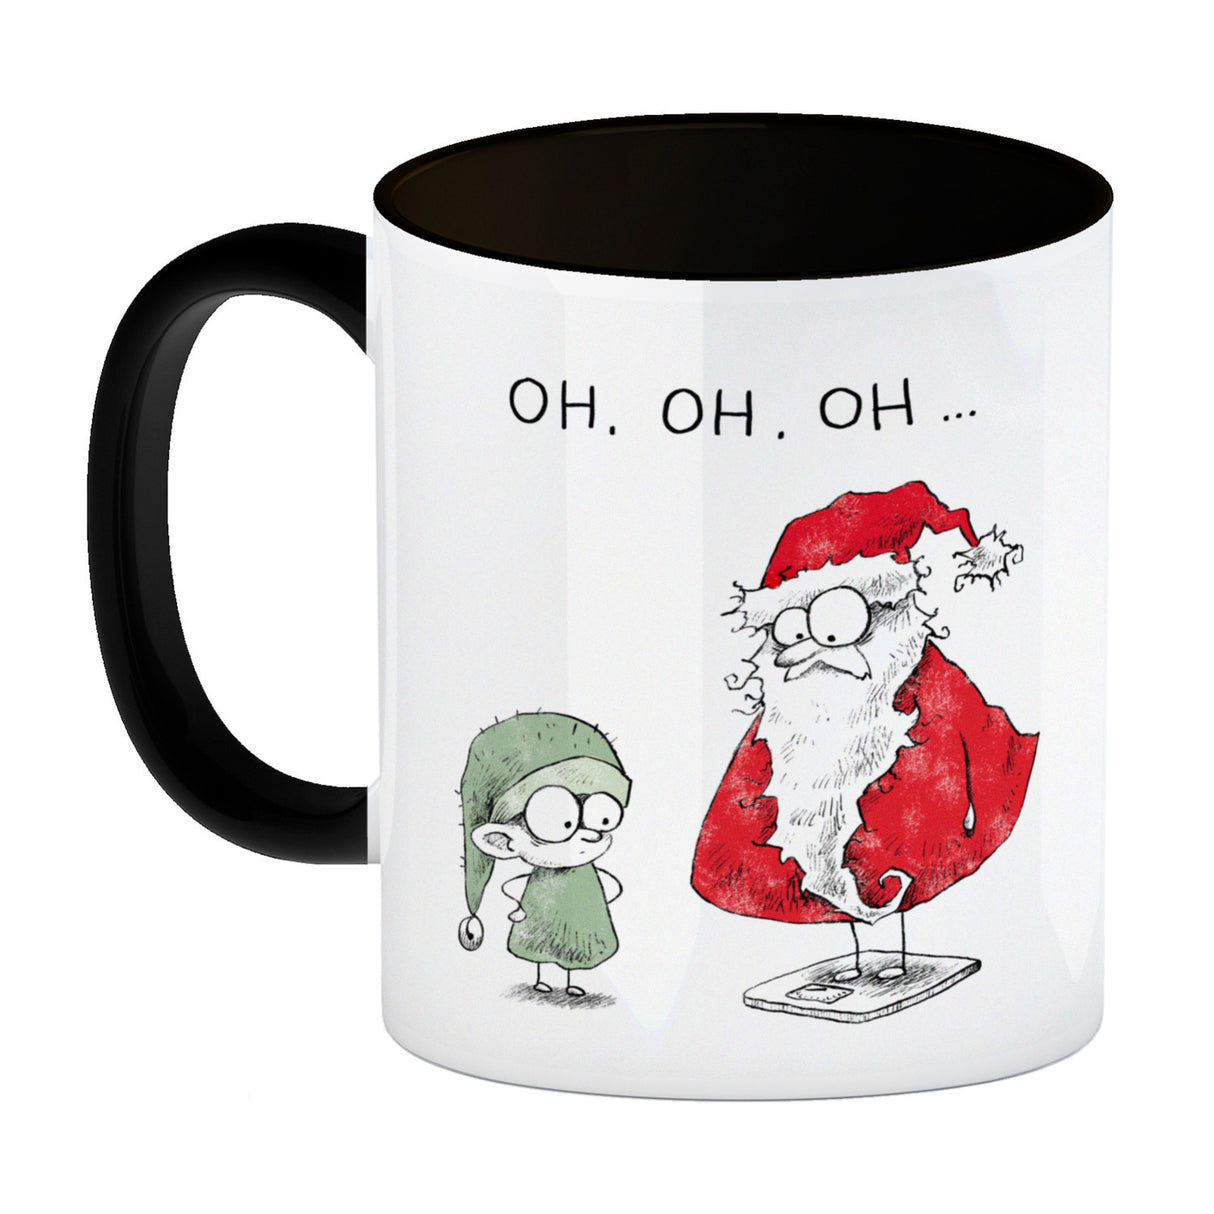 Weihnachtsmann am Naschen Kaffeebecher mit Spruch Erwischt